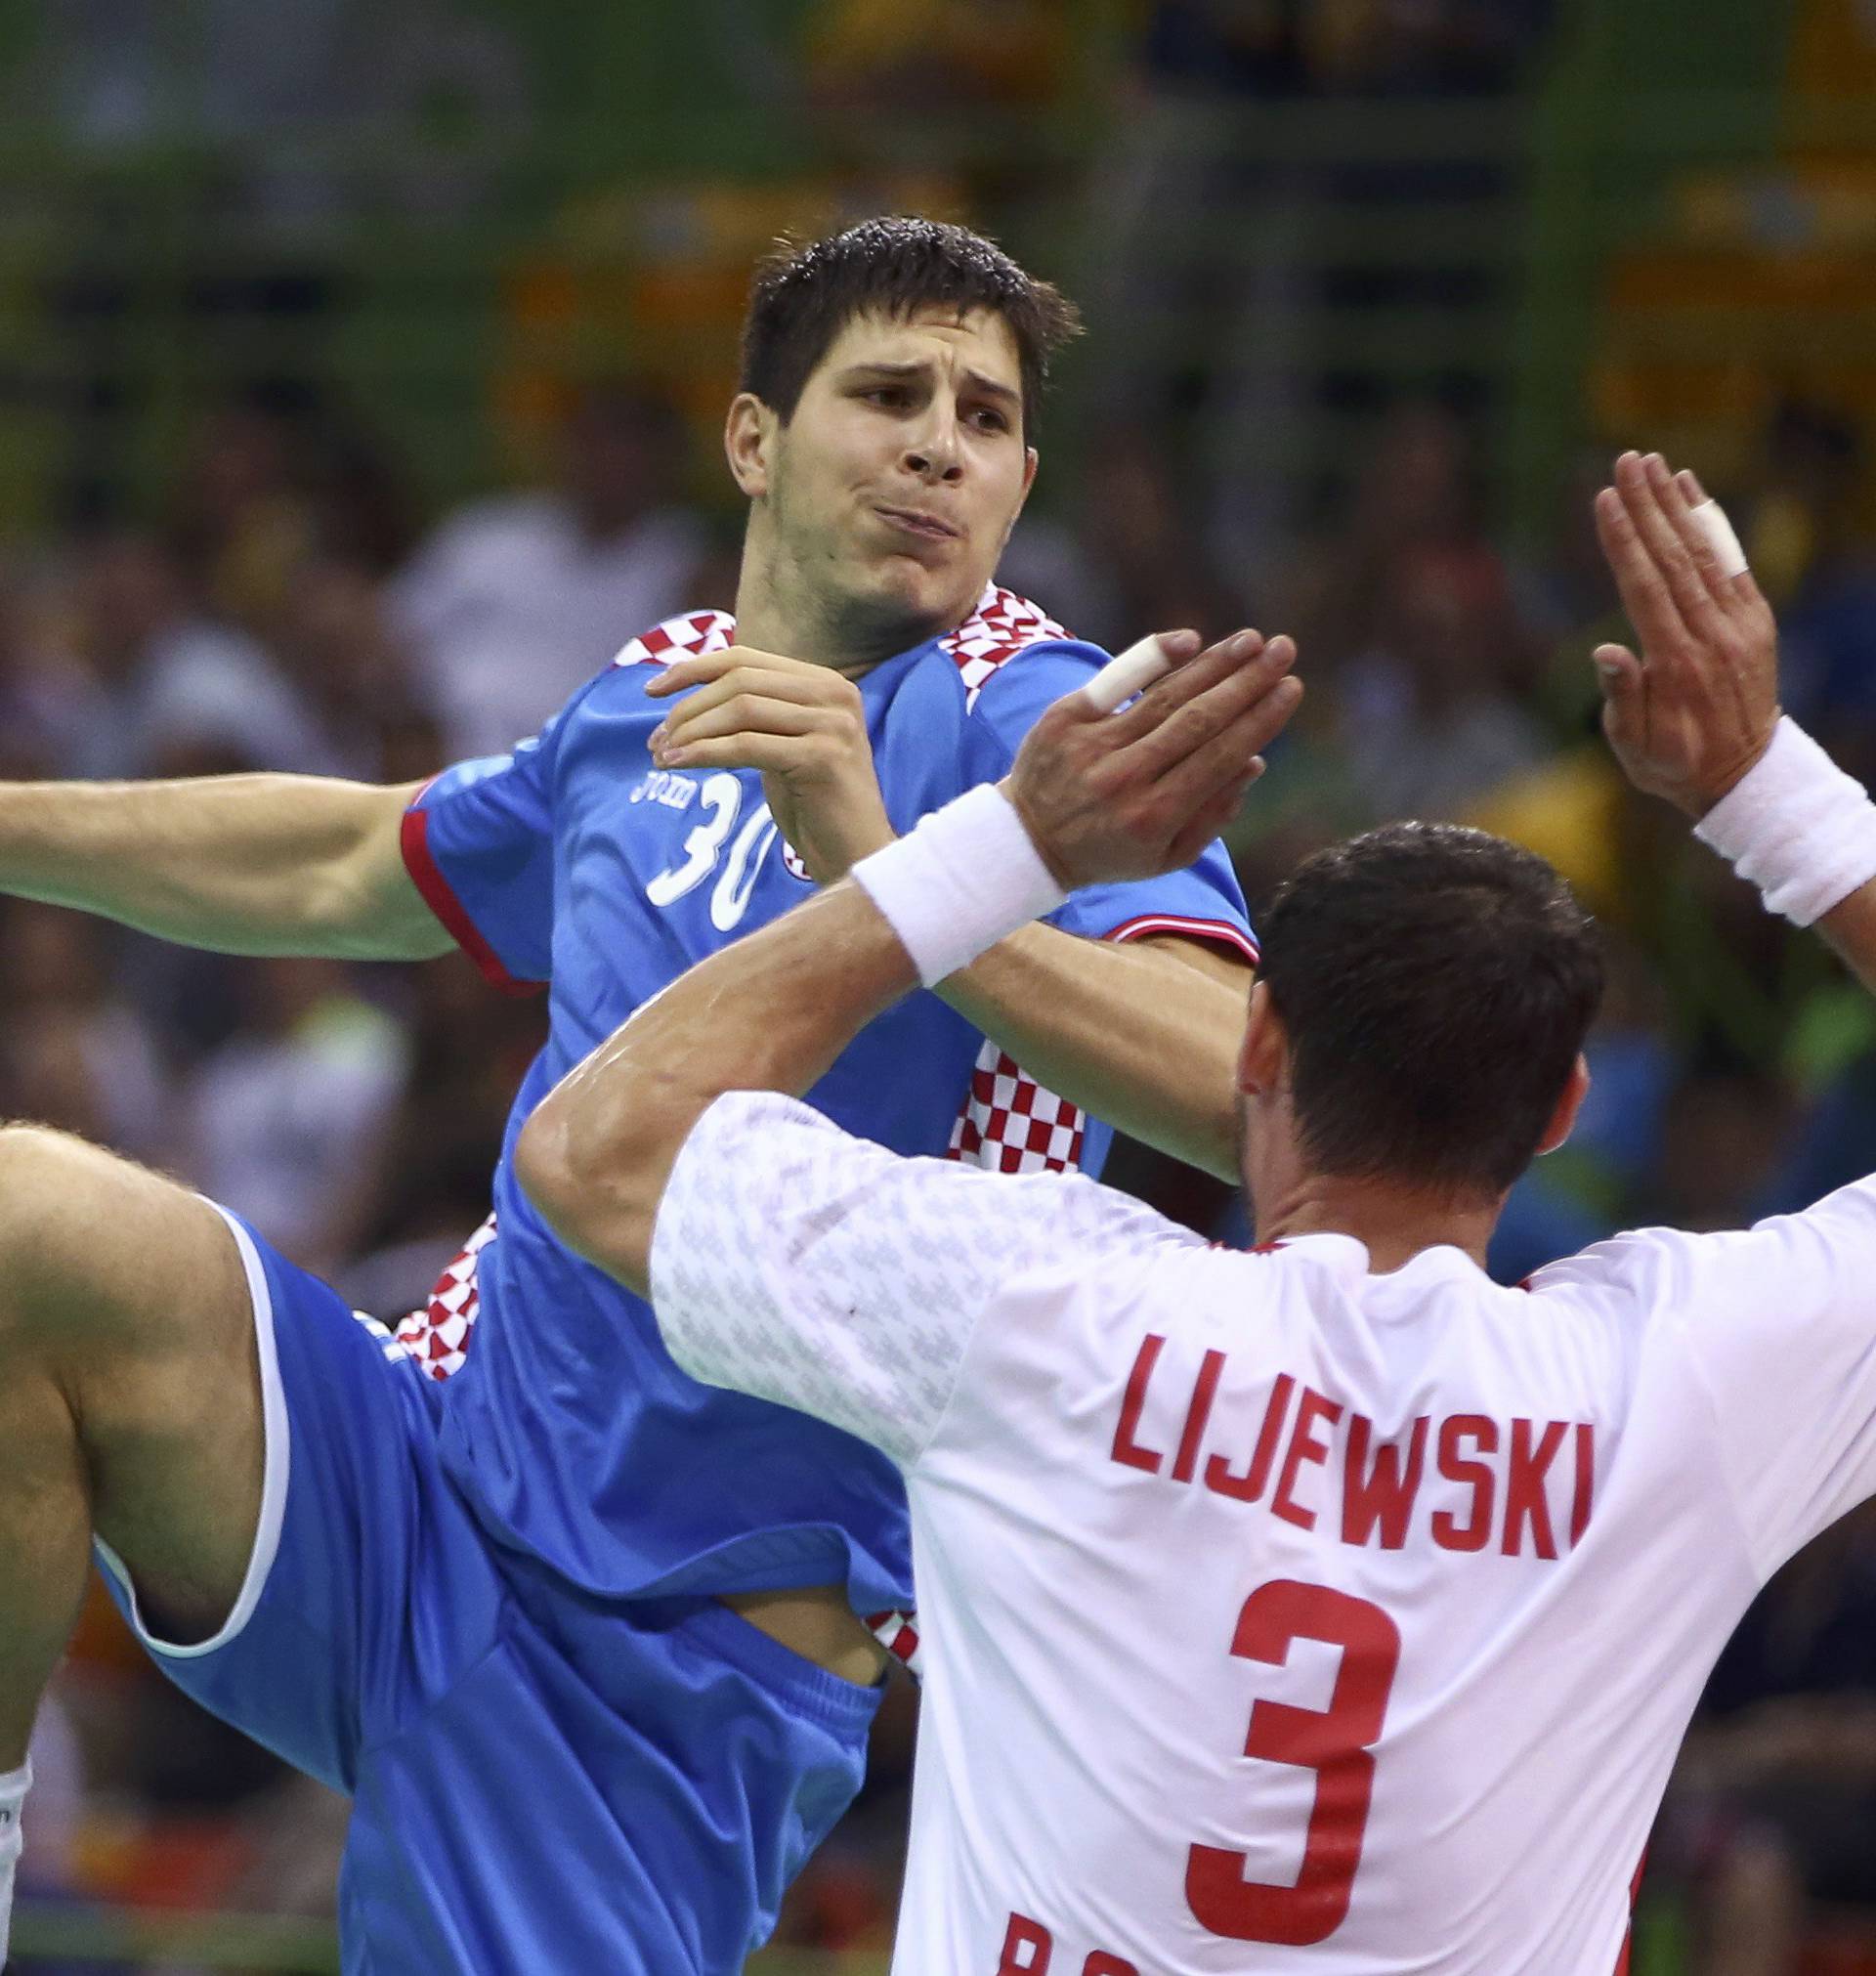 Handball - Men's Quarterfinal Croatia v Poland